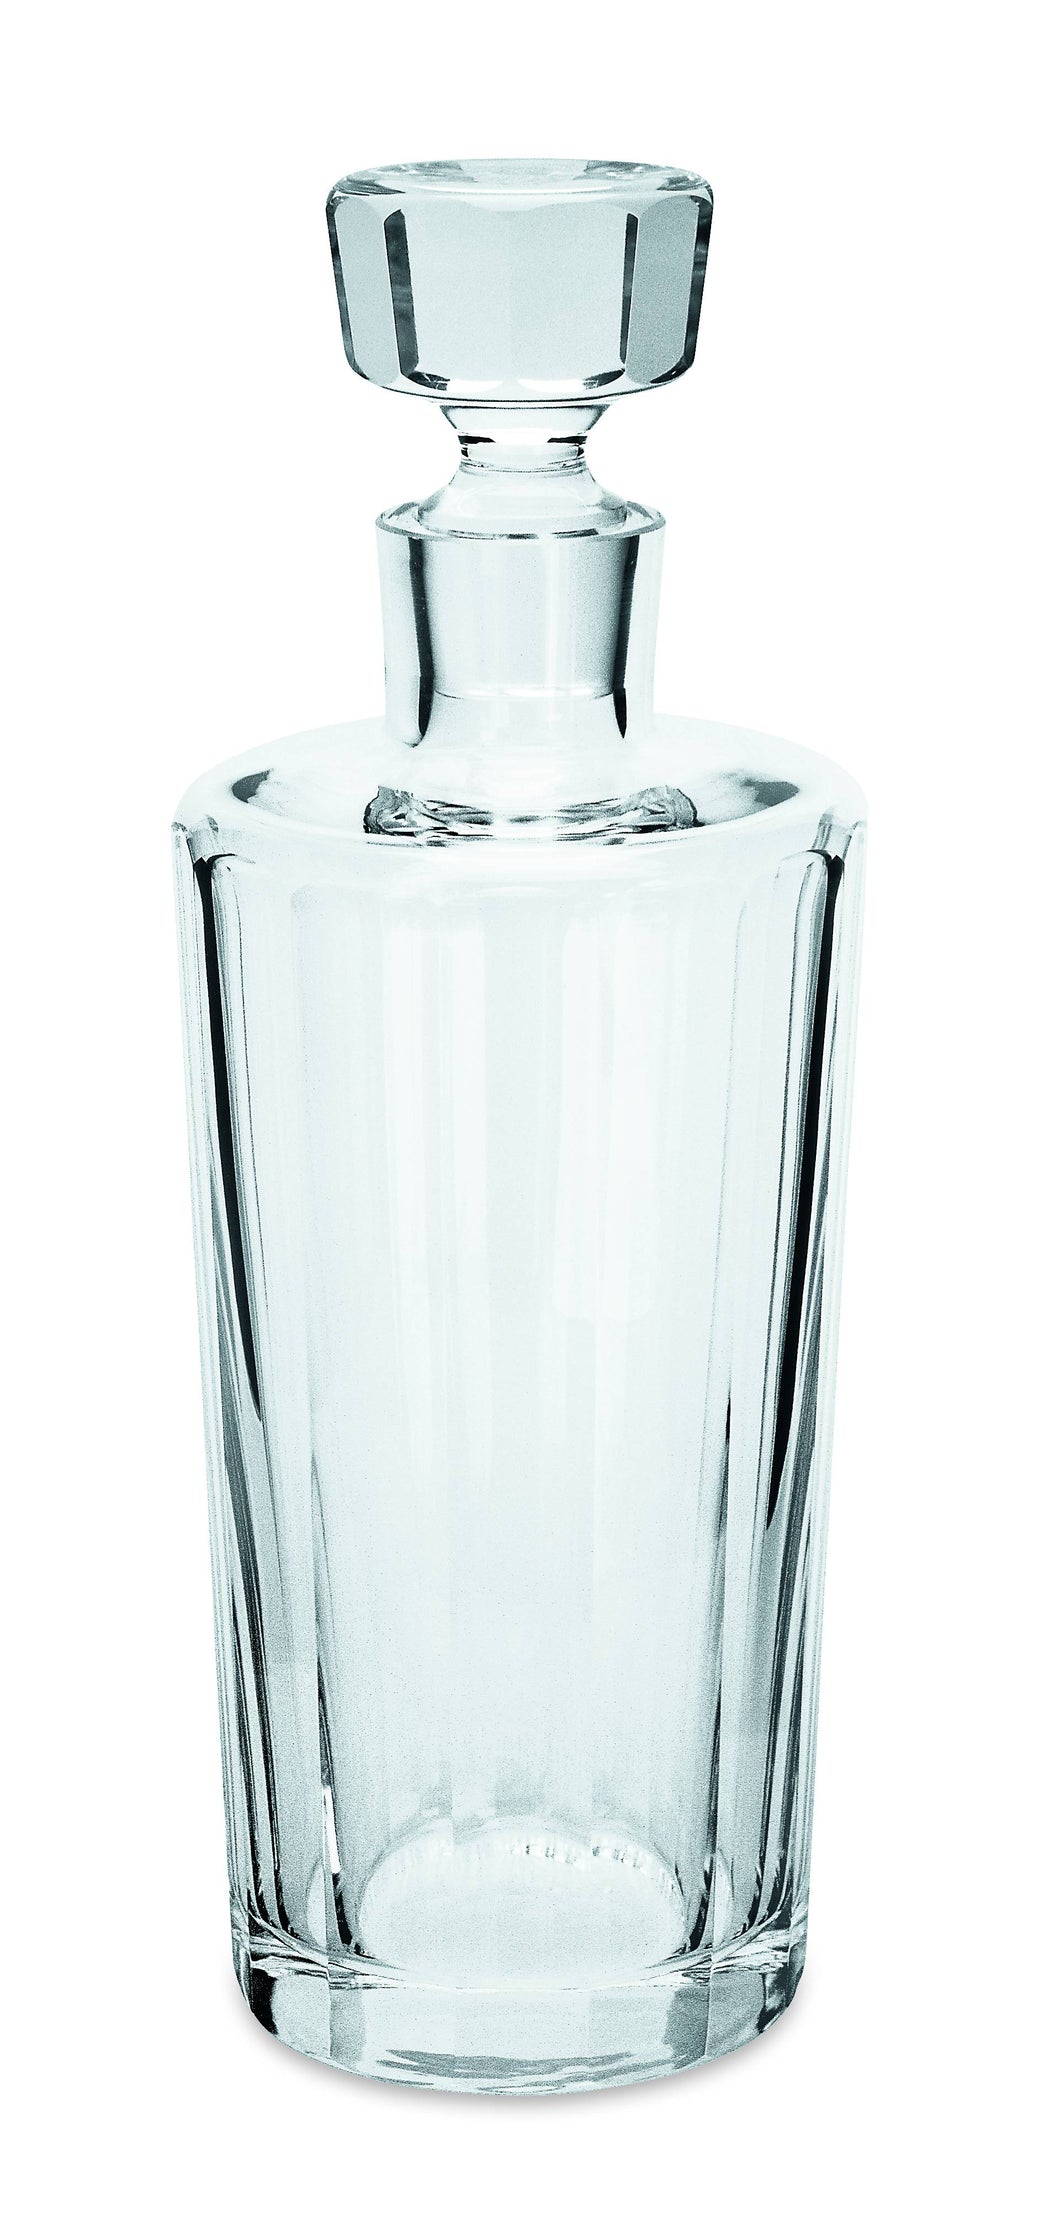 ROLAND Whiskyflasche  0,75 l, klar, polierter Flächenschliff - 260 mm